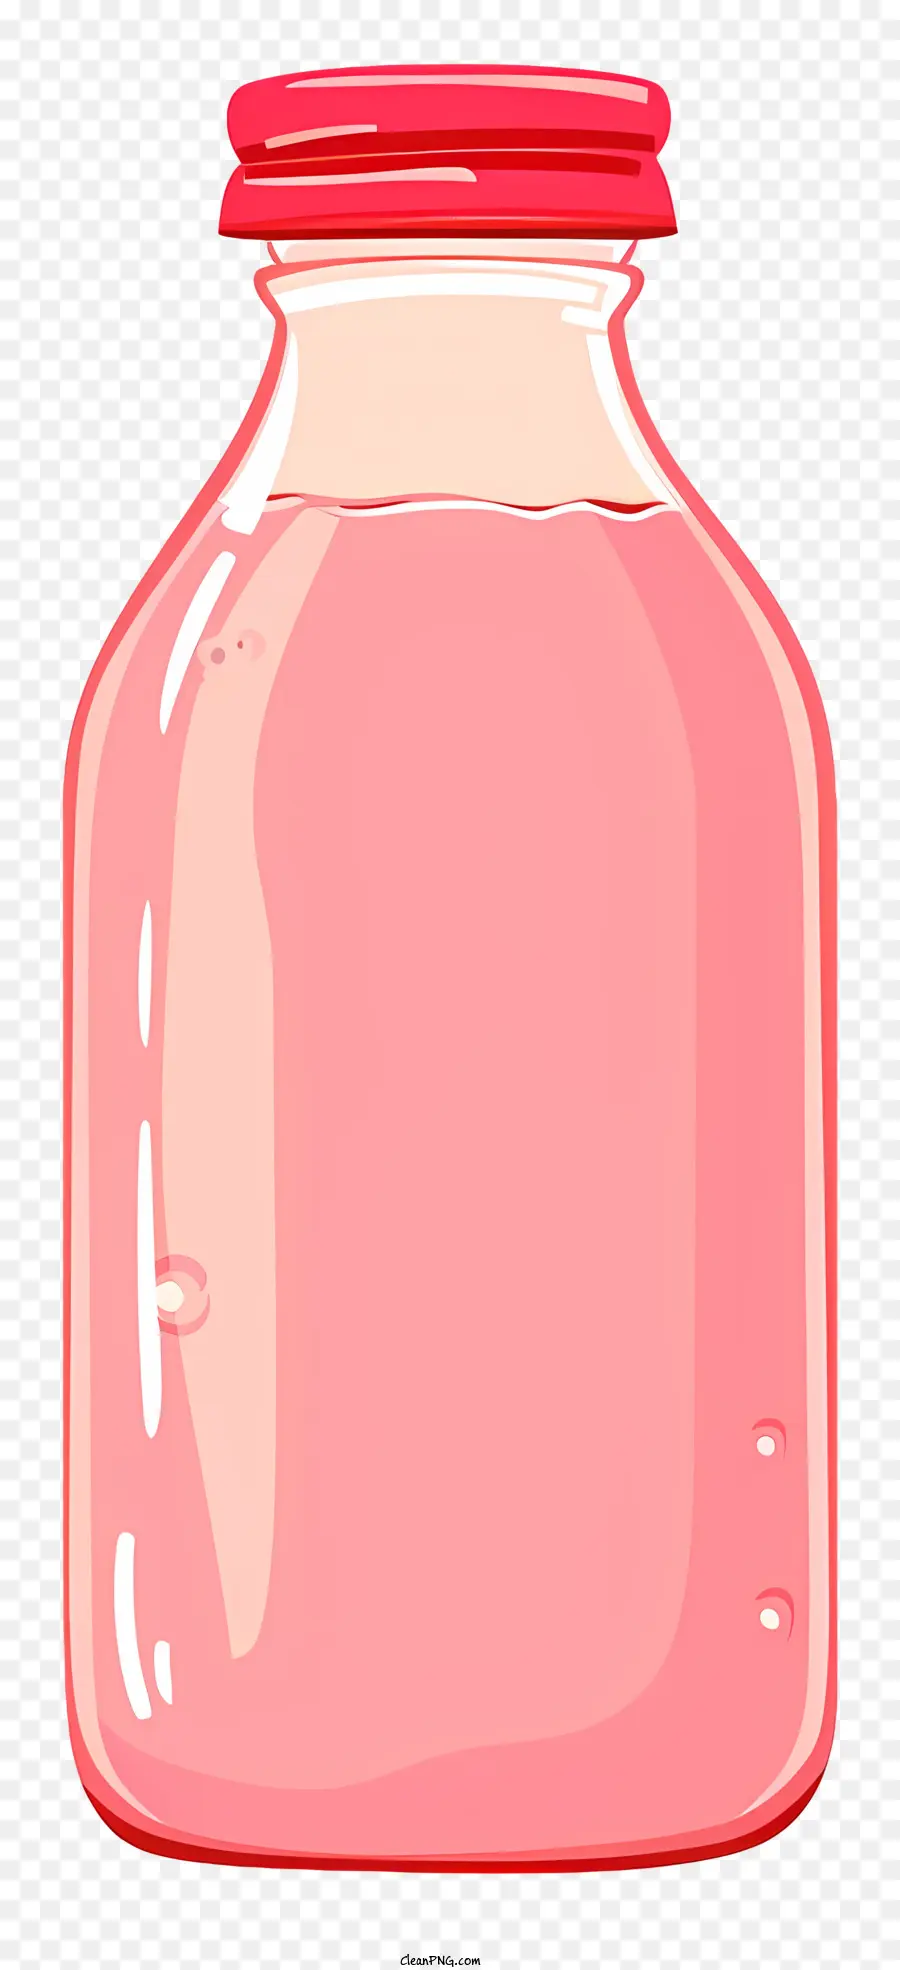 succo di frutta - Bottiglia di vetro con coperchio rosso, etichetta bianca, liquido